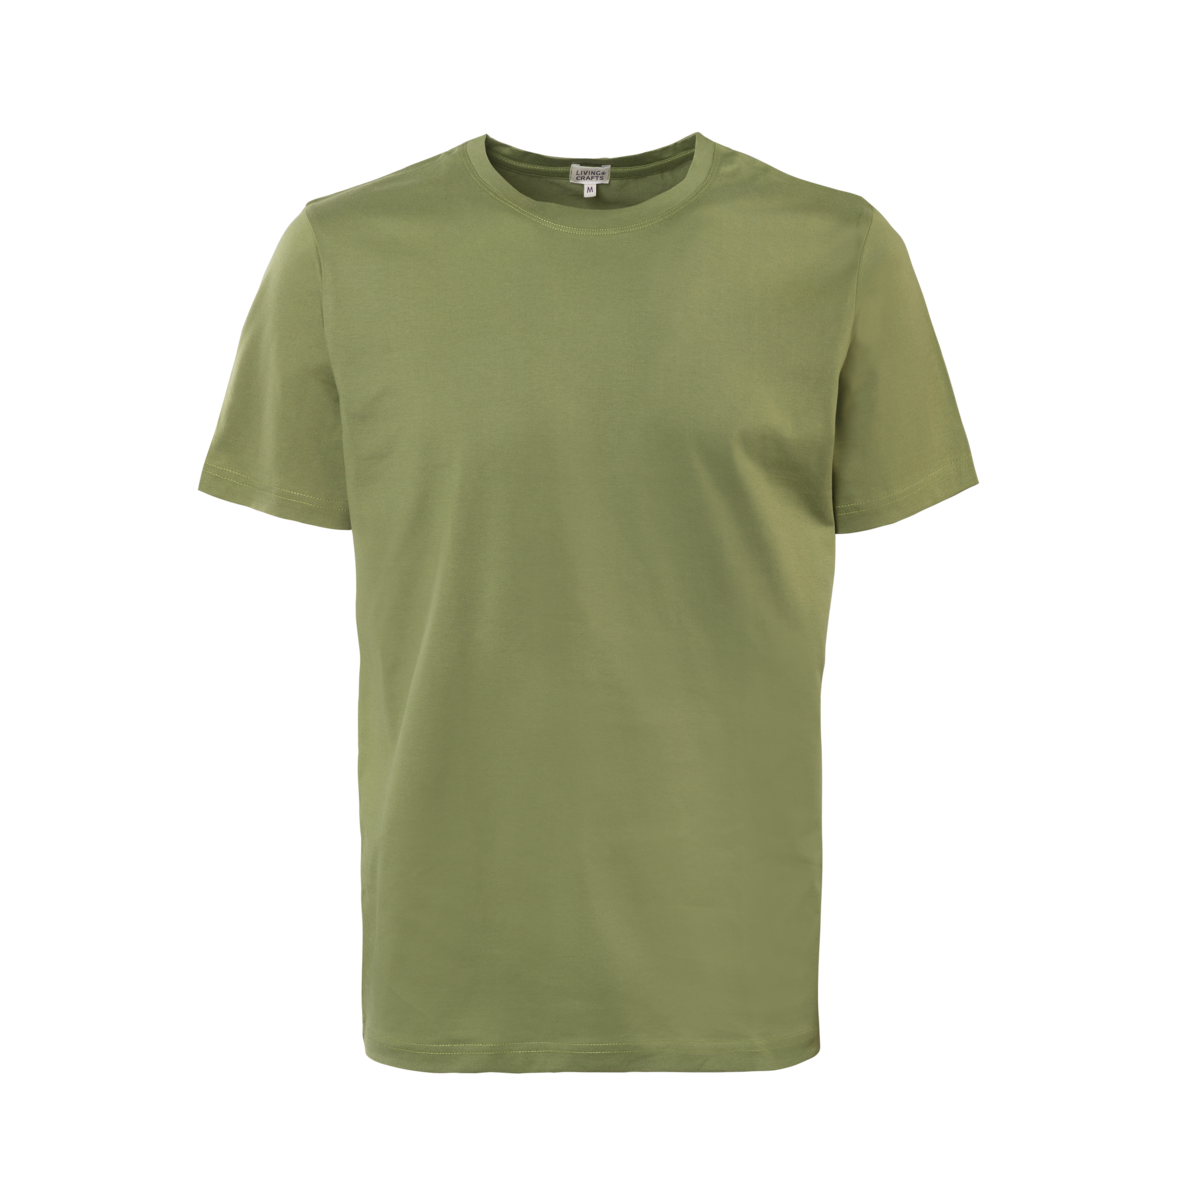 Green T-shirt, NORMAN